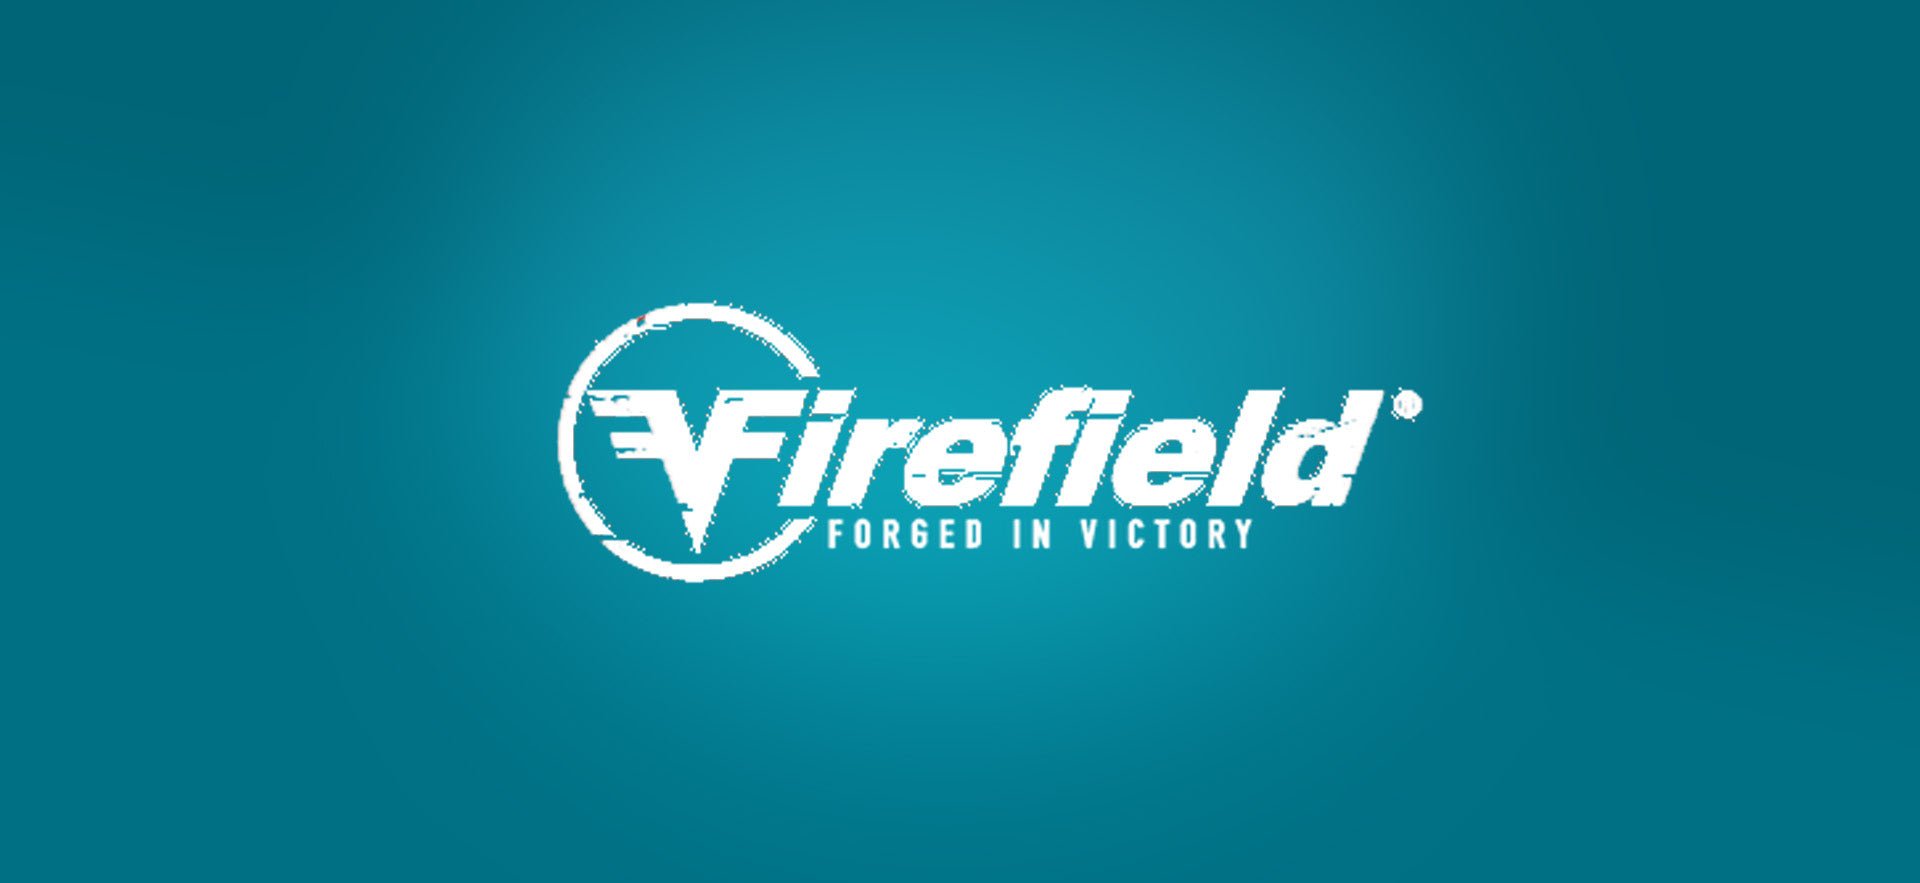 Firefield - Weekend-Warrior.Shop